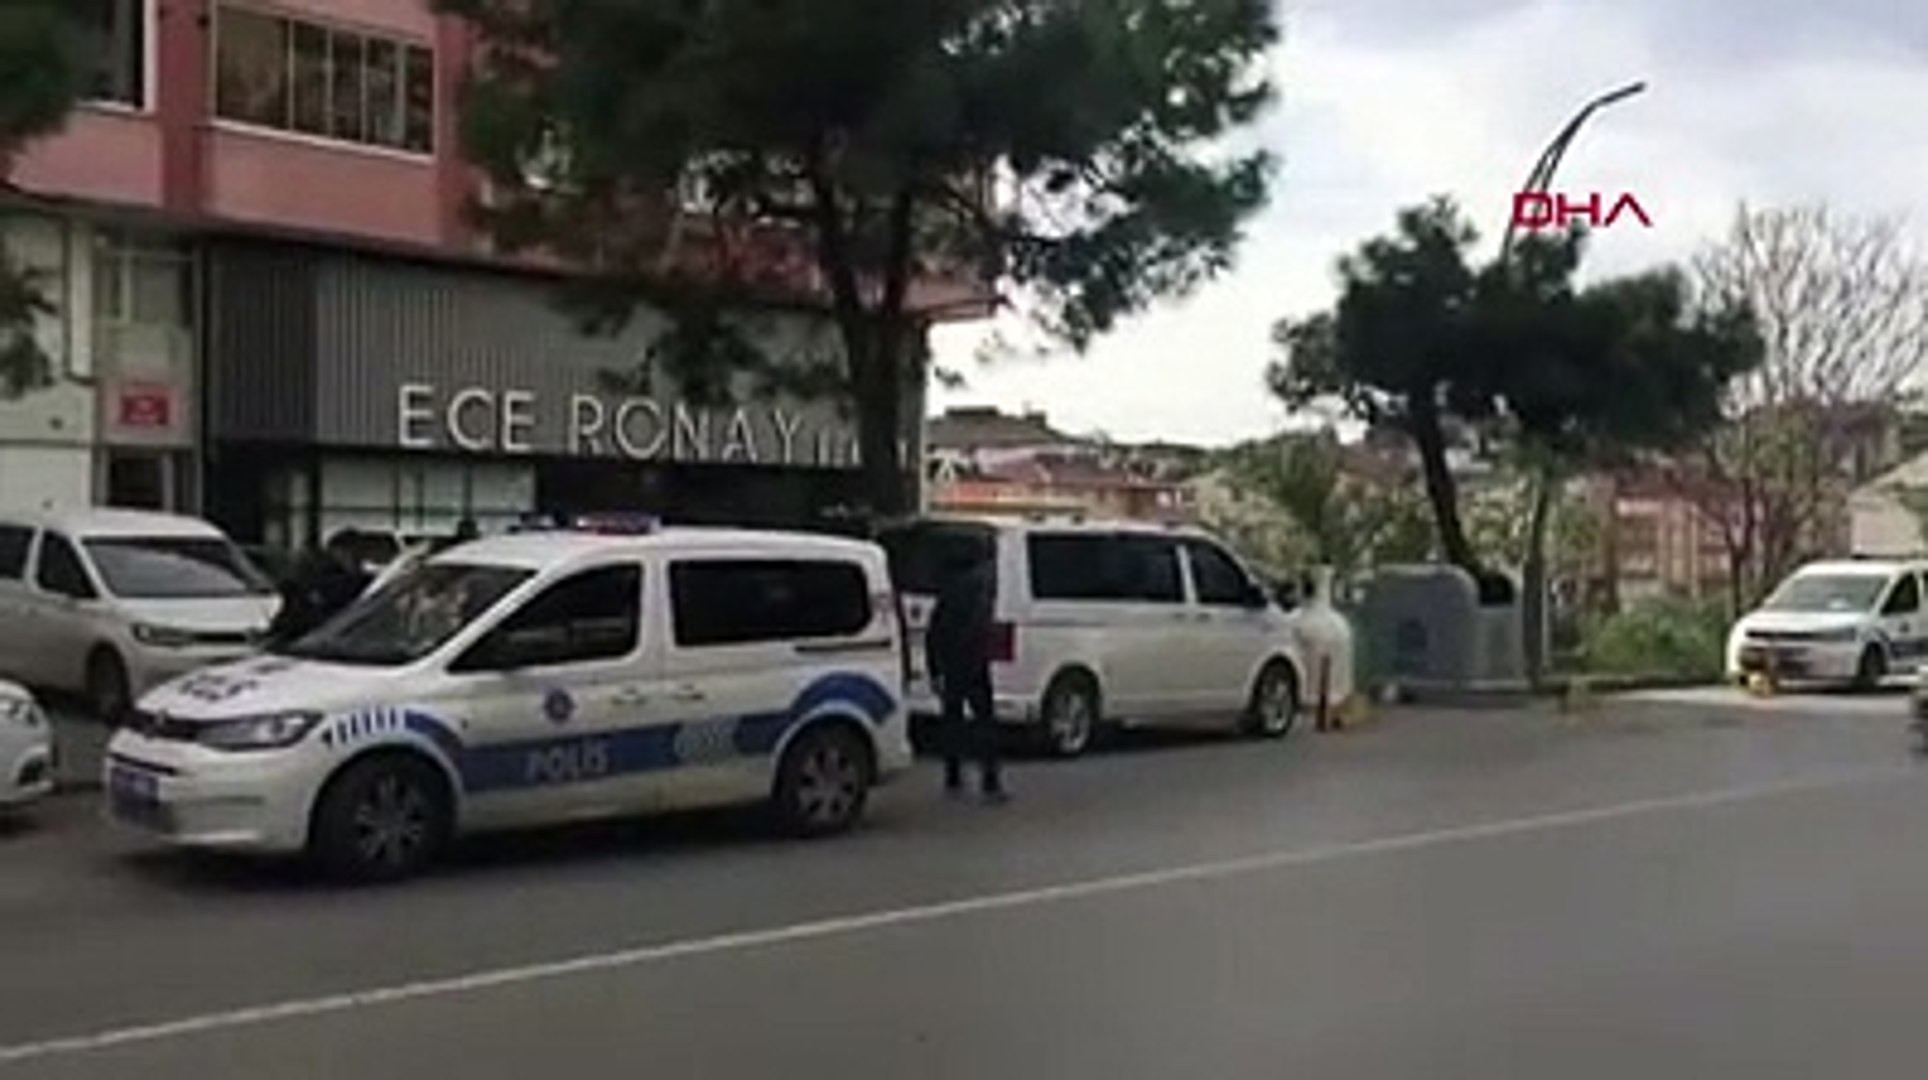 Ece Ronay'ın güzellik merkezine silahlı saldırı